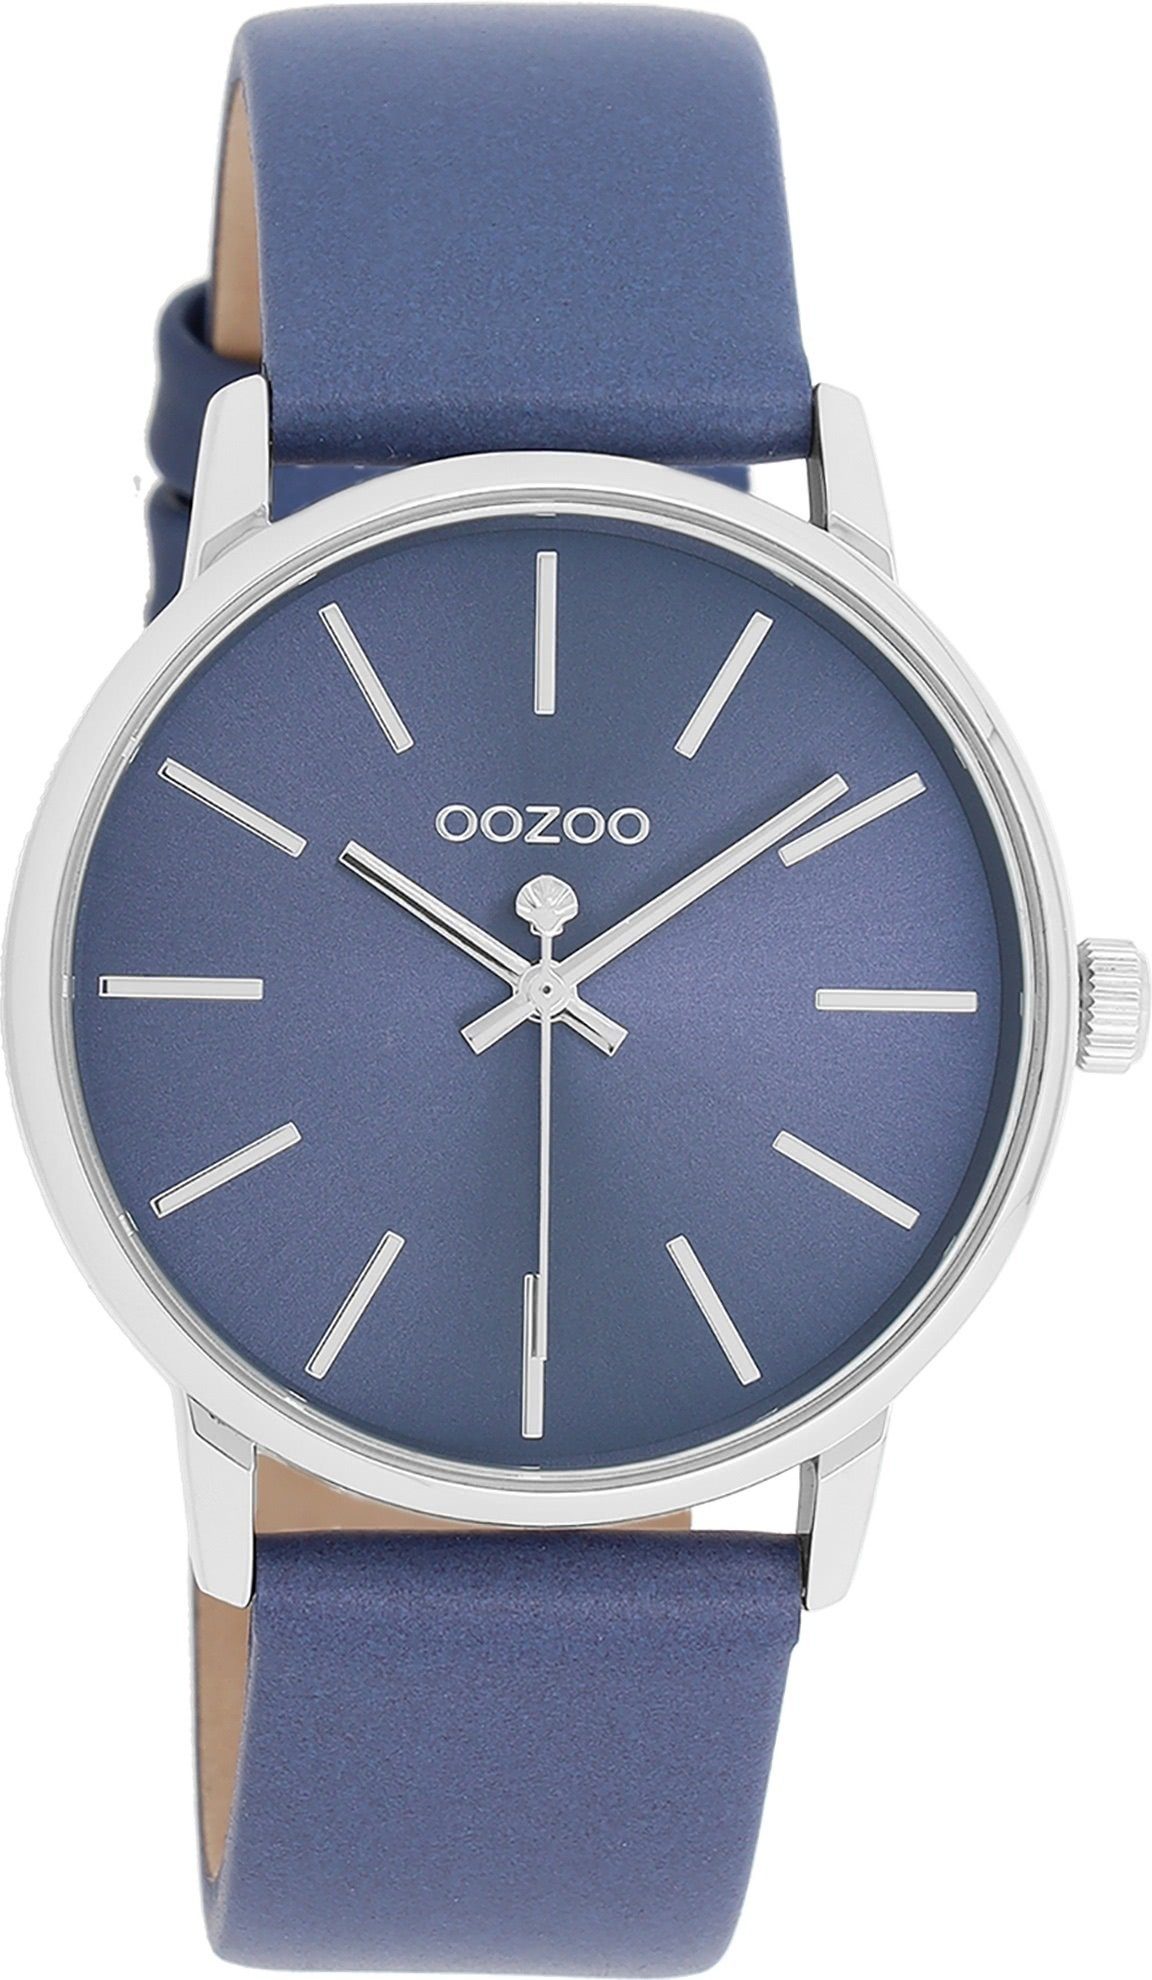 OOZOO Quarzuhr Oozoo Damen Armbanduhr Timepieces Analog, Damenuhr rund,  mittel (ca. 36mm) Lederarmband, Fashion-Style, Modische Uhr für Damen mit  hochwertigem Miyota Quarzlaufwerk